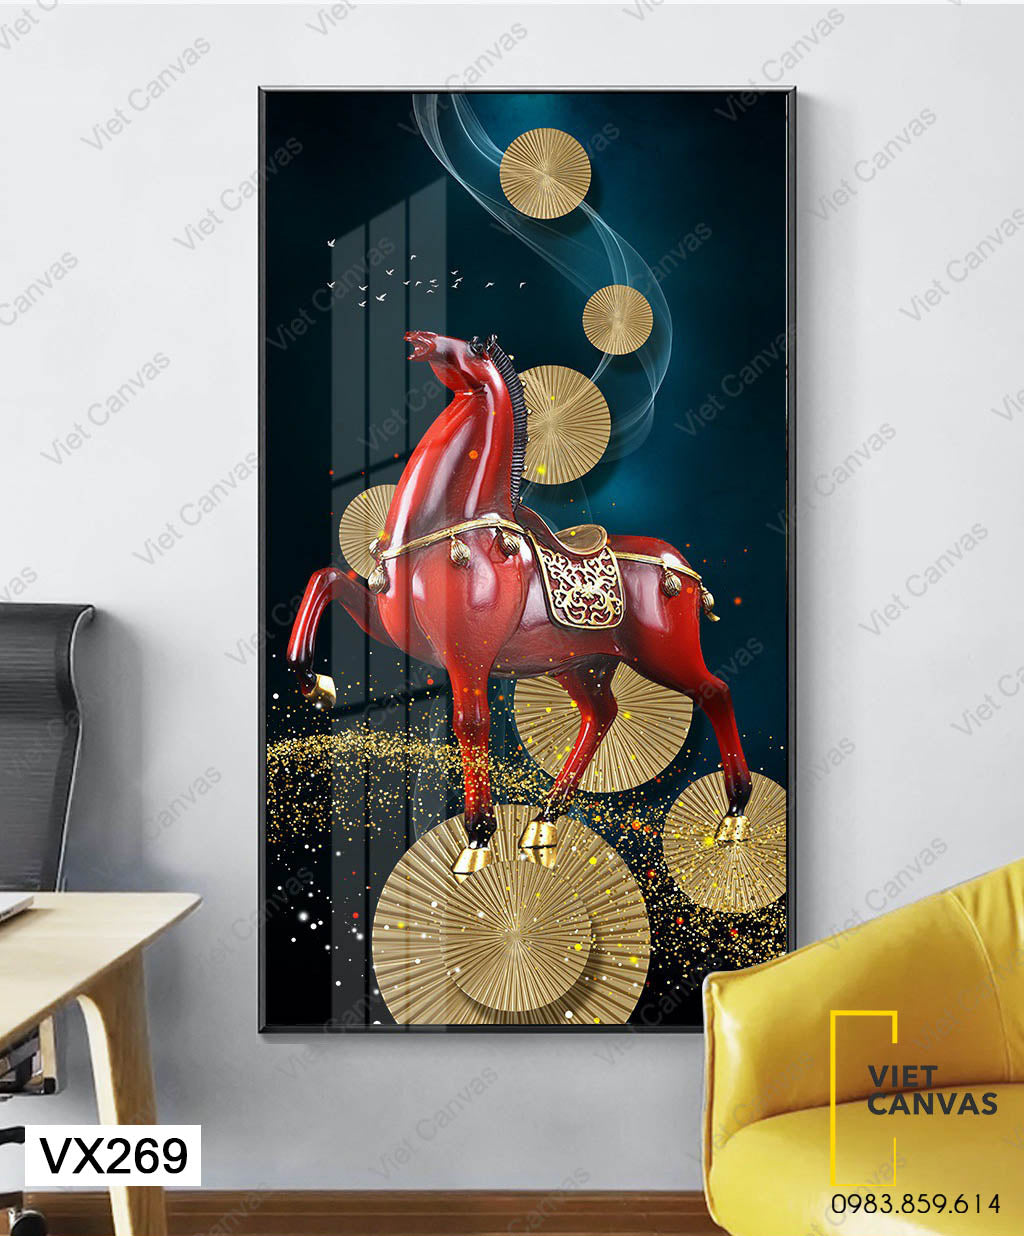 Tranh Con Ngựa Đỏ Oai Phong - VX269